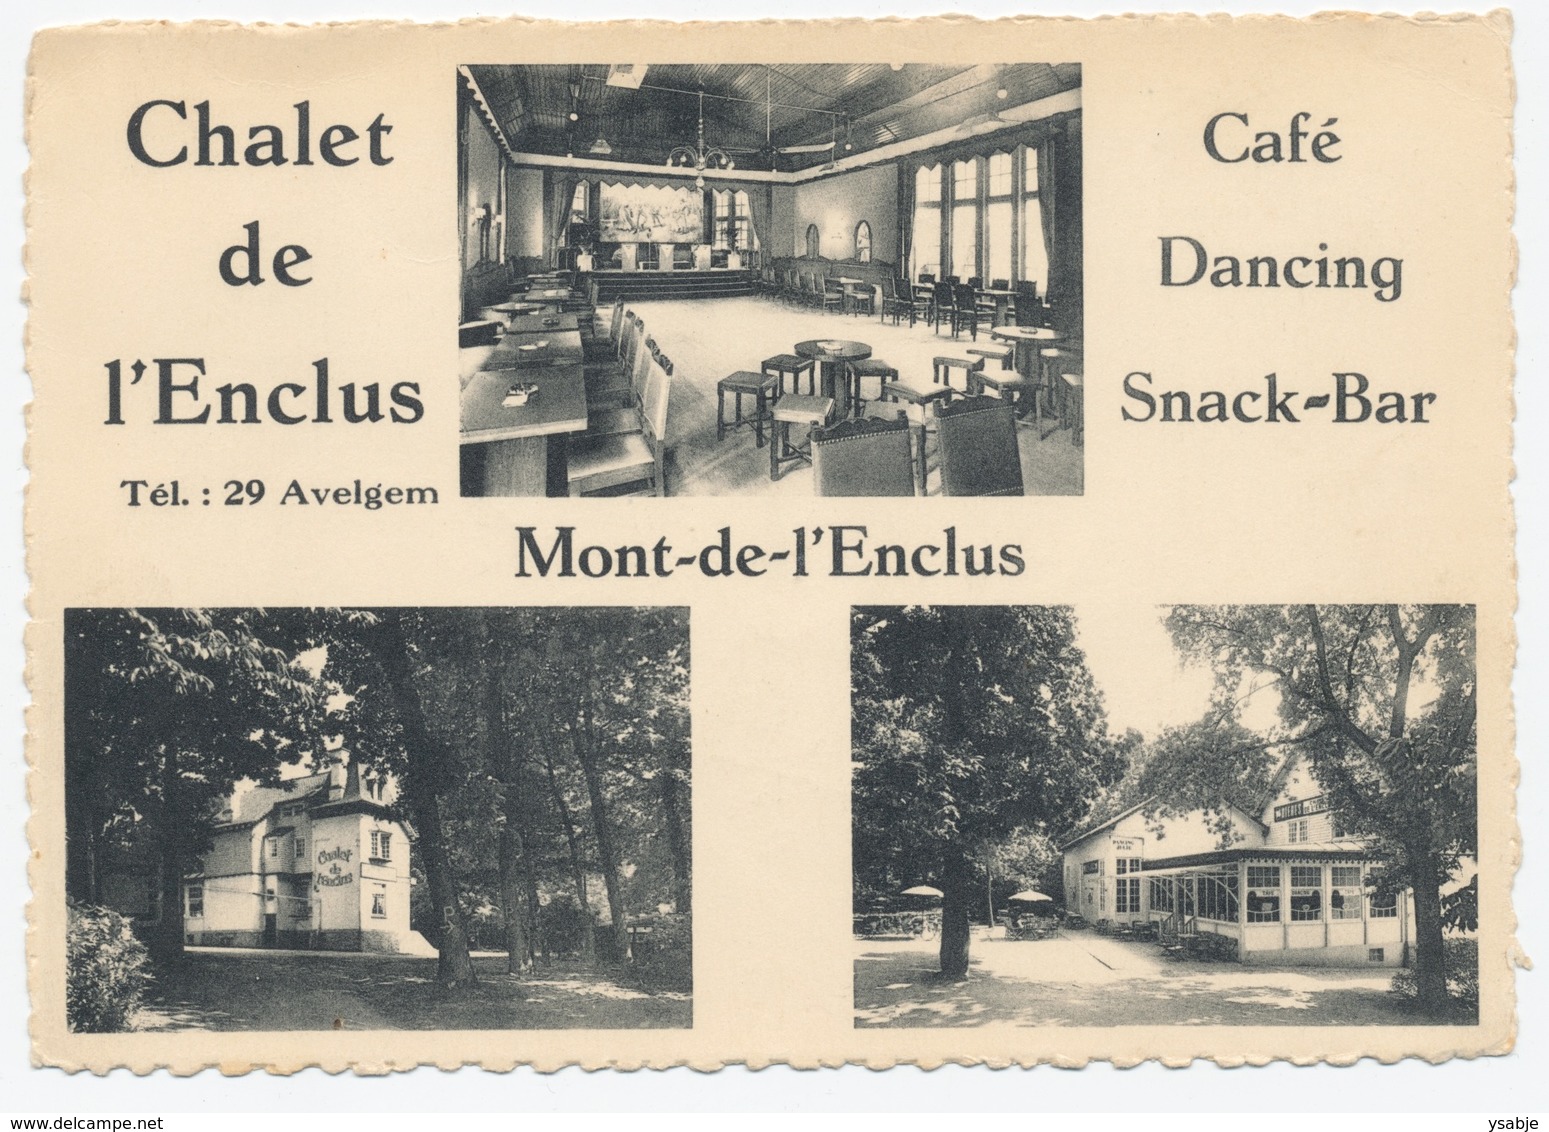 Chalet De L'Enclus - Café Dancing Snack-bar - Mont De L'encus - Orroir - Avelgem - Mont-de-l'Enclus